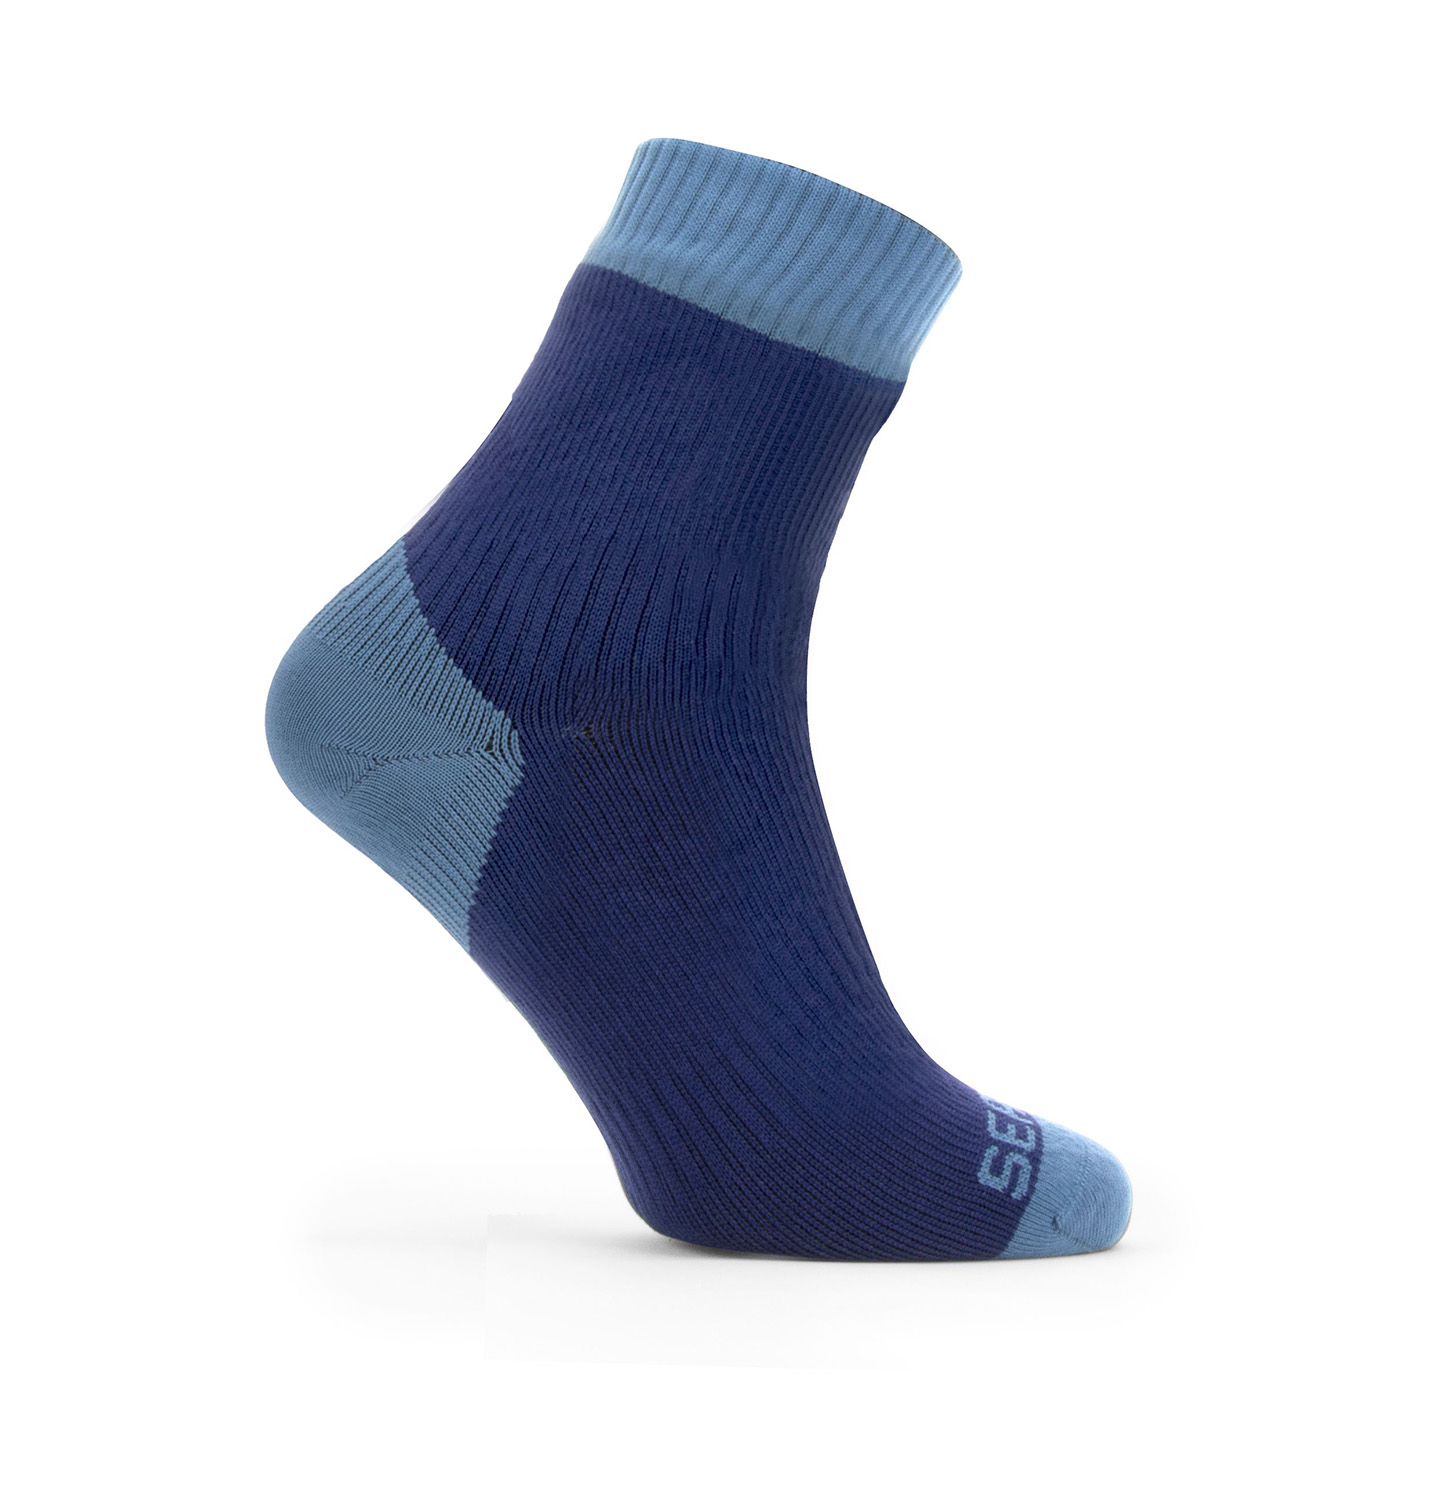 SealSkinz Waterproof Warm Weather Ankle Length Socks - Navy Blue | eBay